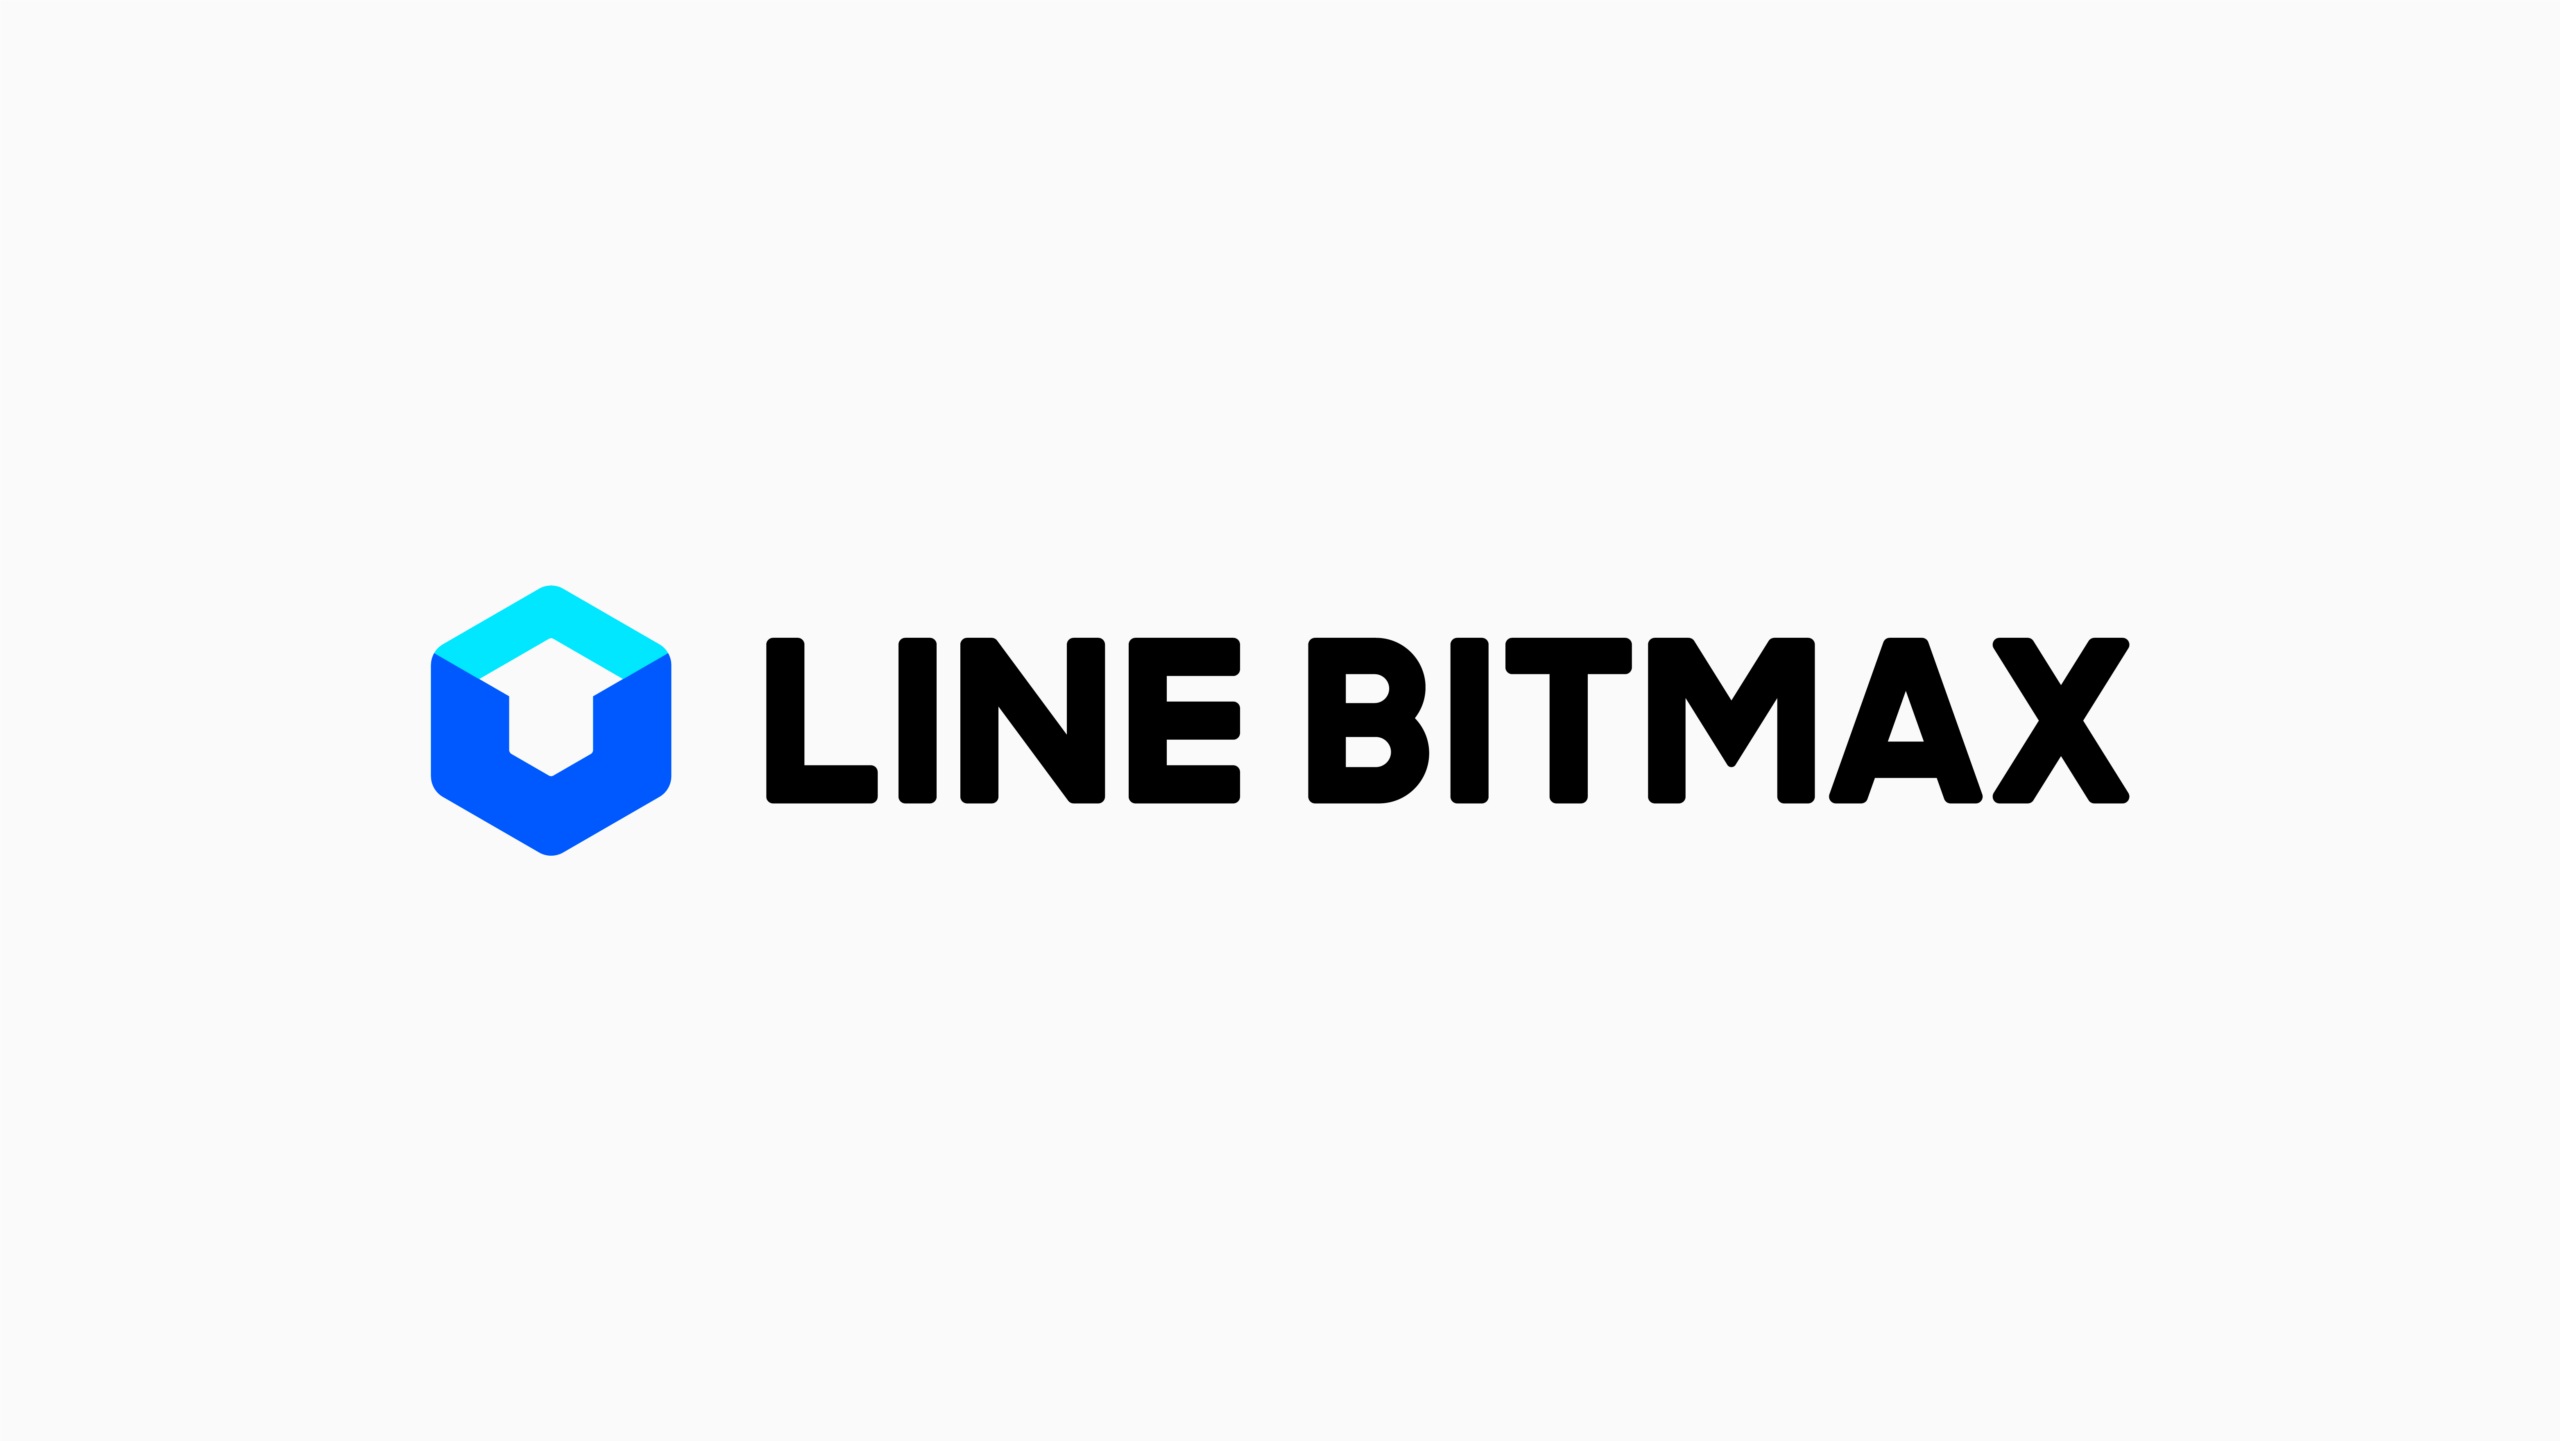 BitMax Logo